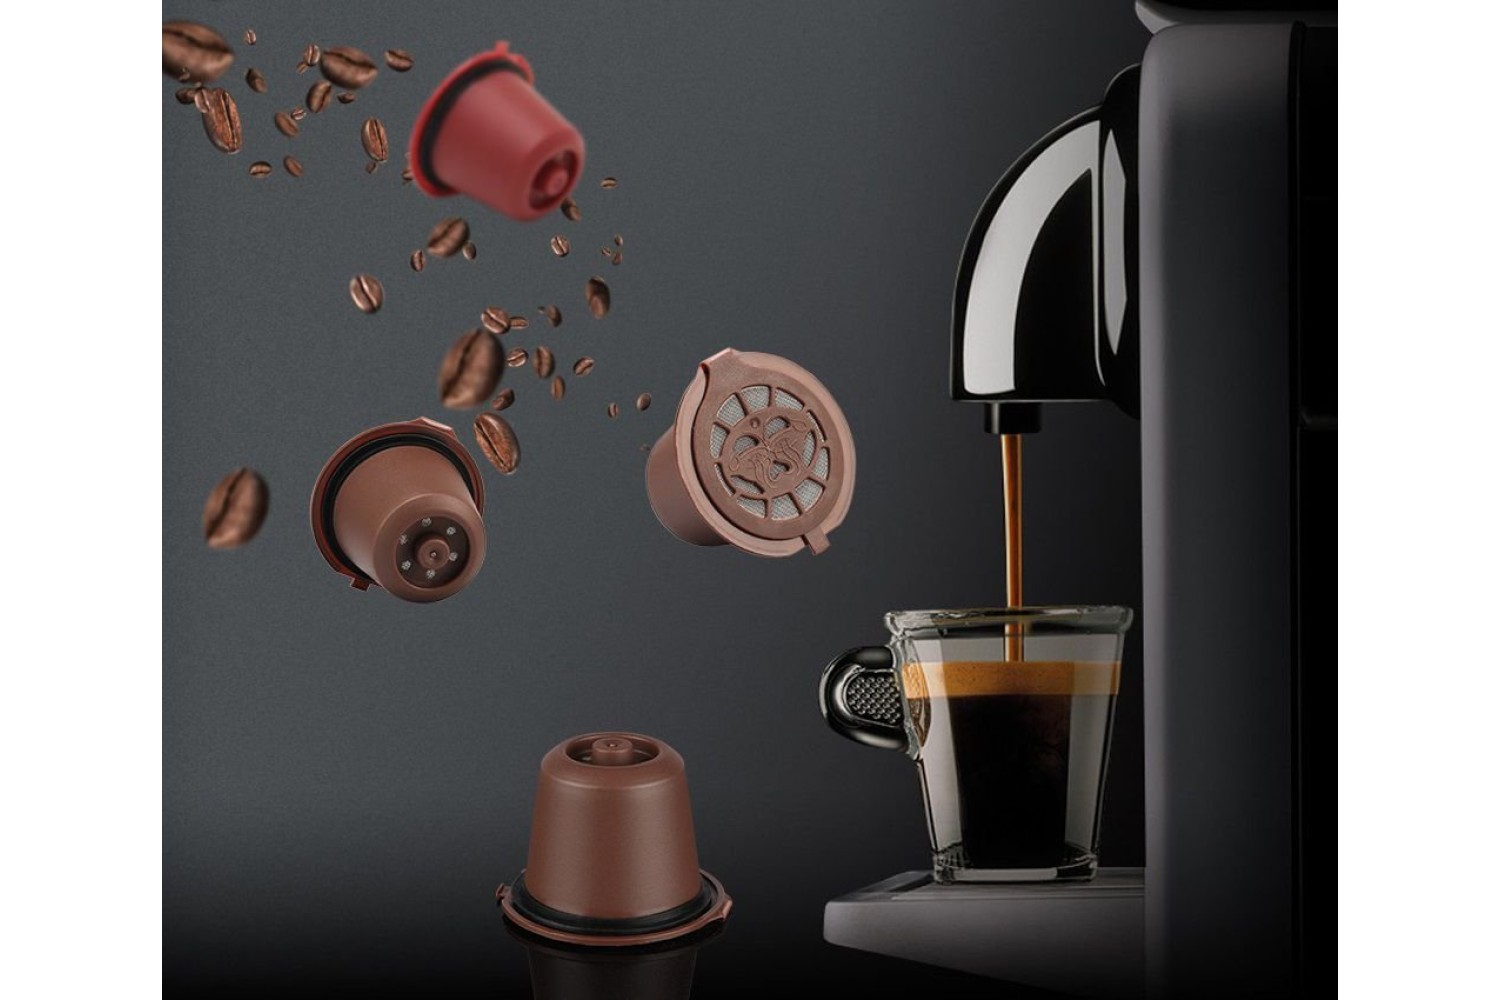 Кофеварка – это автоматические или полуавтоматическое устройство для приготовления кофе методом заваривания.